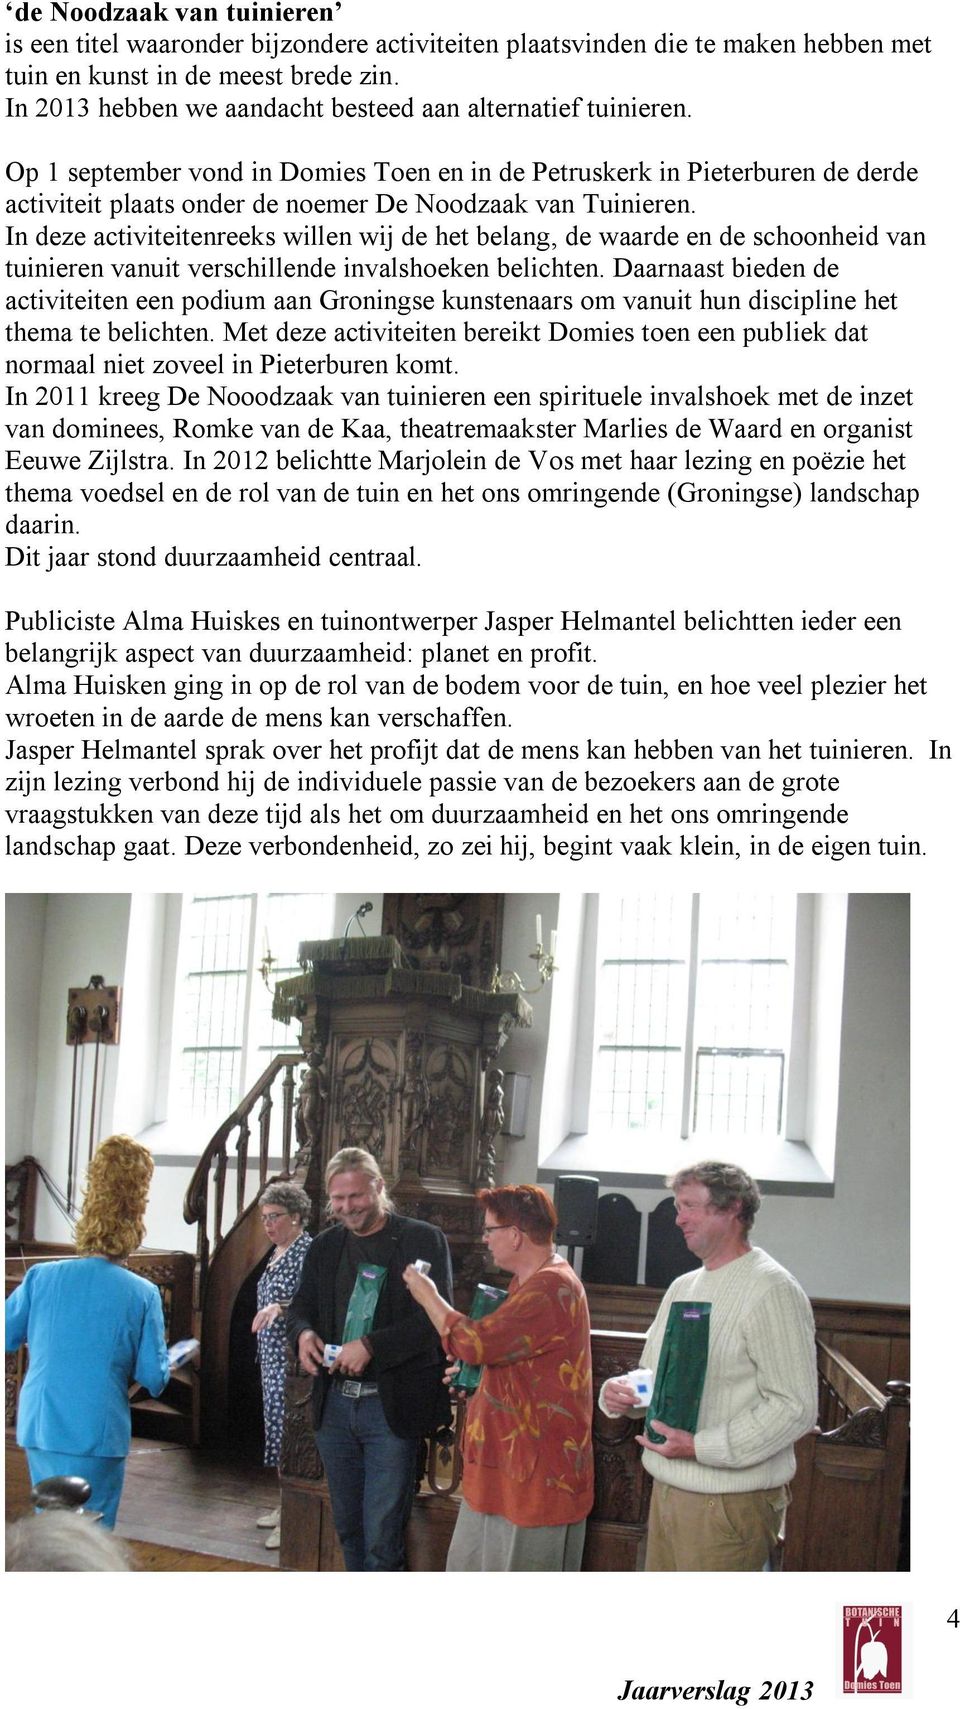 Op 1 september vond in Domies Toen en in de Petruskerk in Pieterburen de derde activiteit plaats onder de noemer De Noodzaak van Tuinieren.